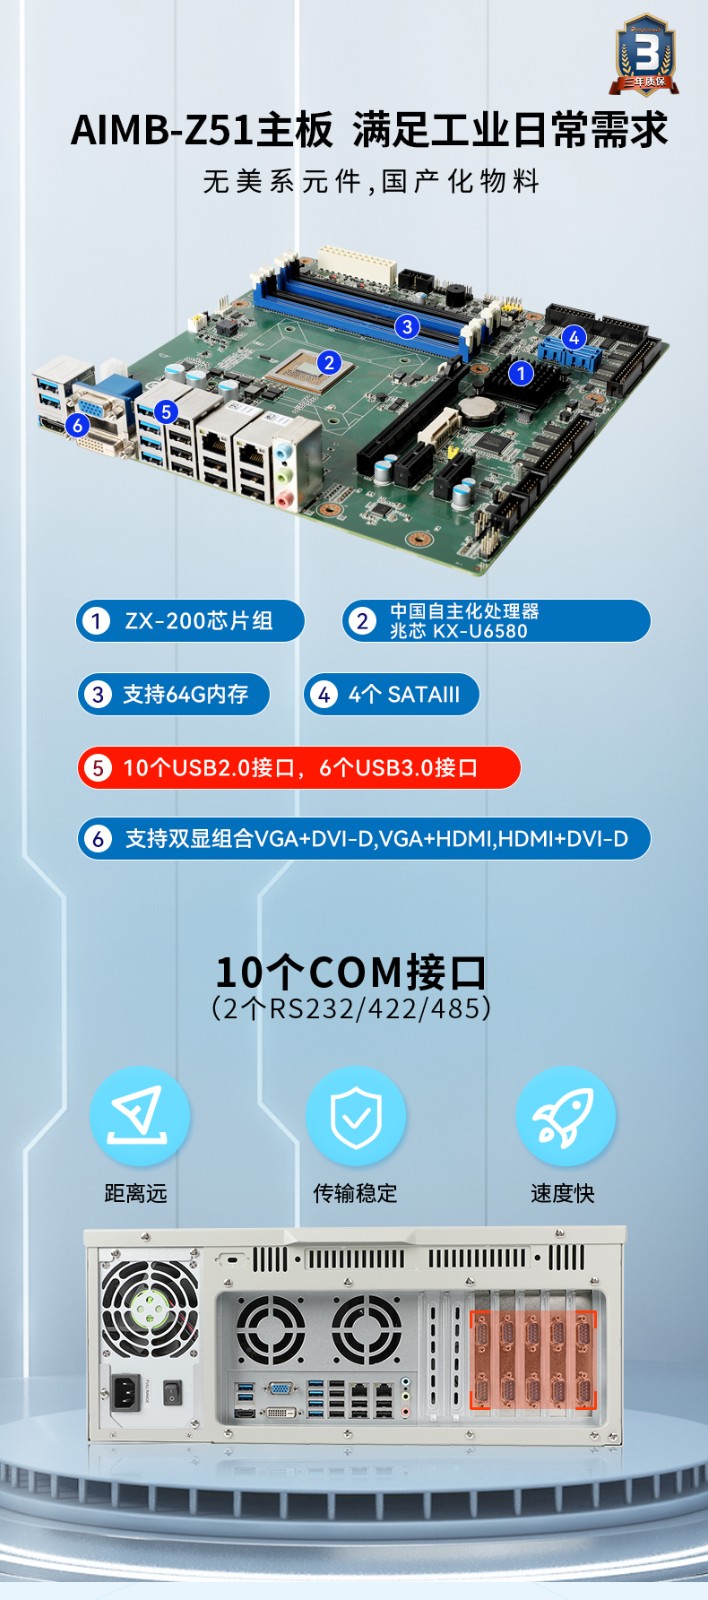 东田国产化4U工控机,国产兆芯处理器,DT-610L-Z51.jpg.jpg